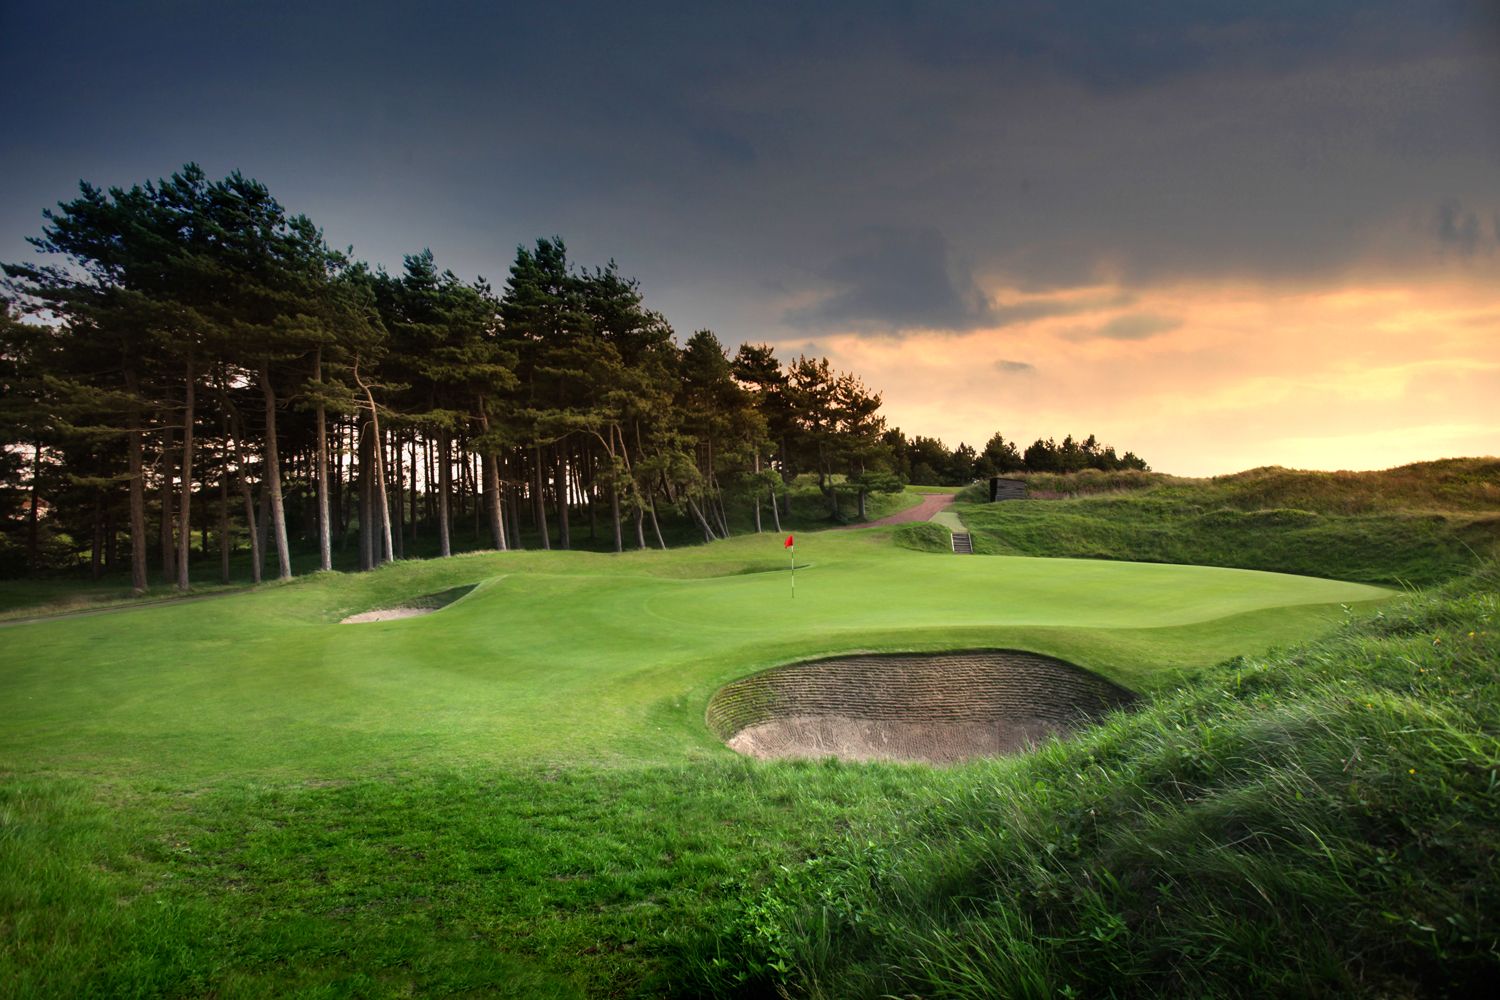 Hilside Golf Club on England's Golf Coast